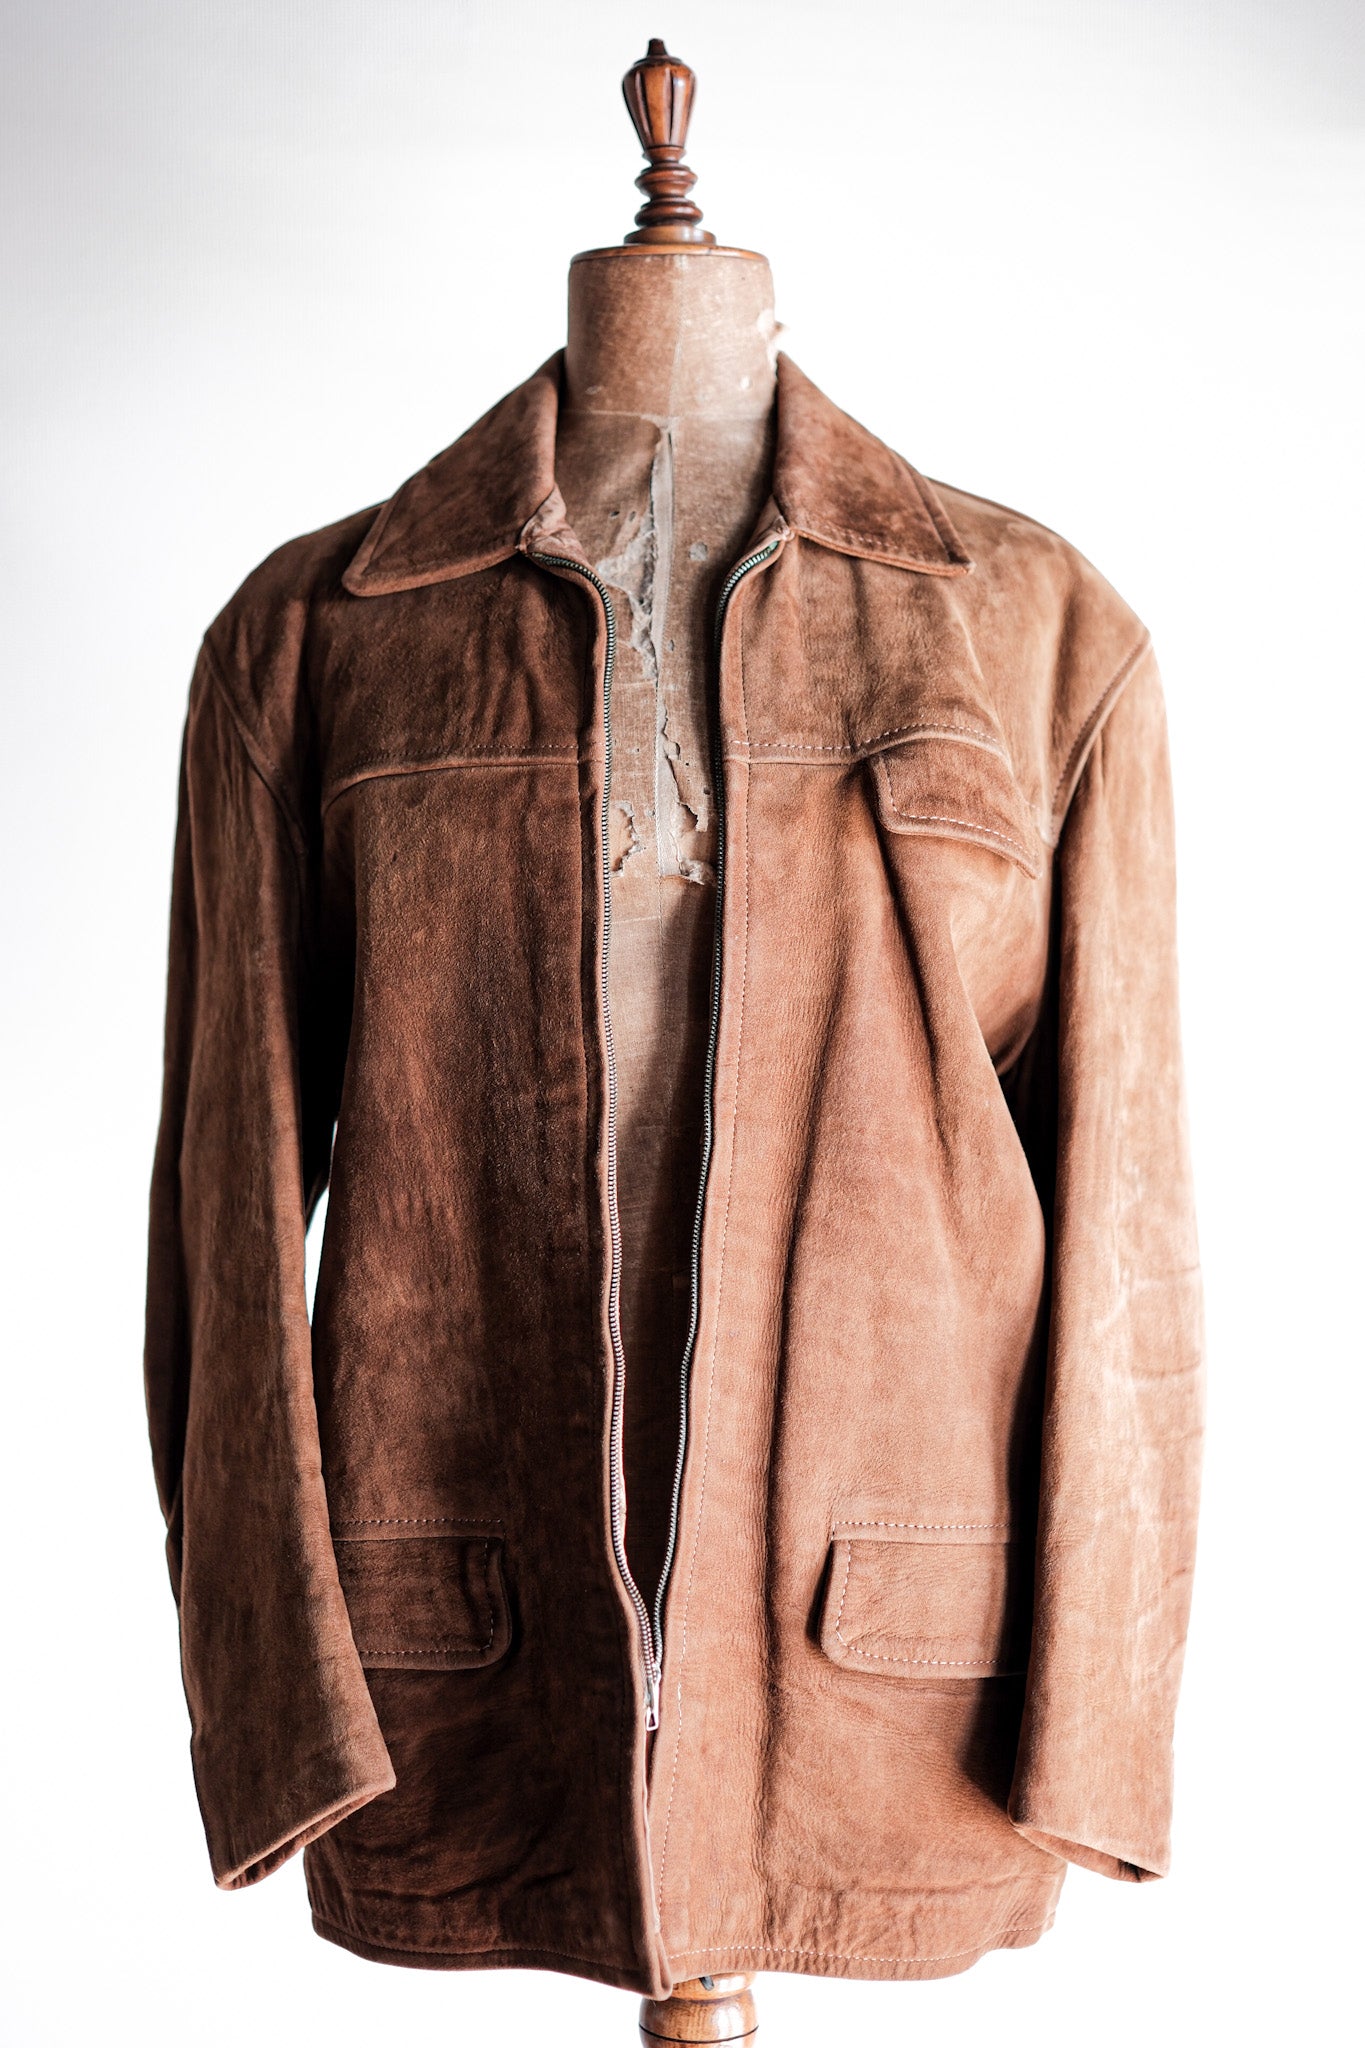 [~ 60 년대] 프랑스 빈티지 브라운 스웨이드 지퍼 업 재킷